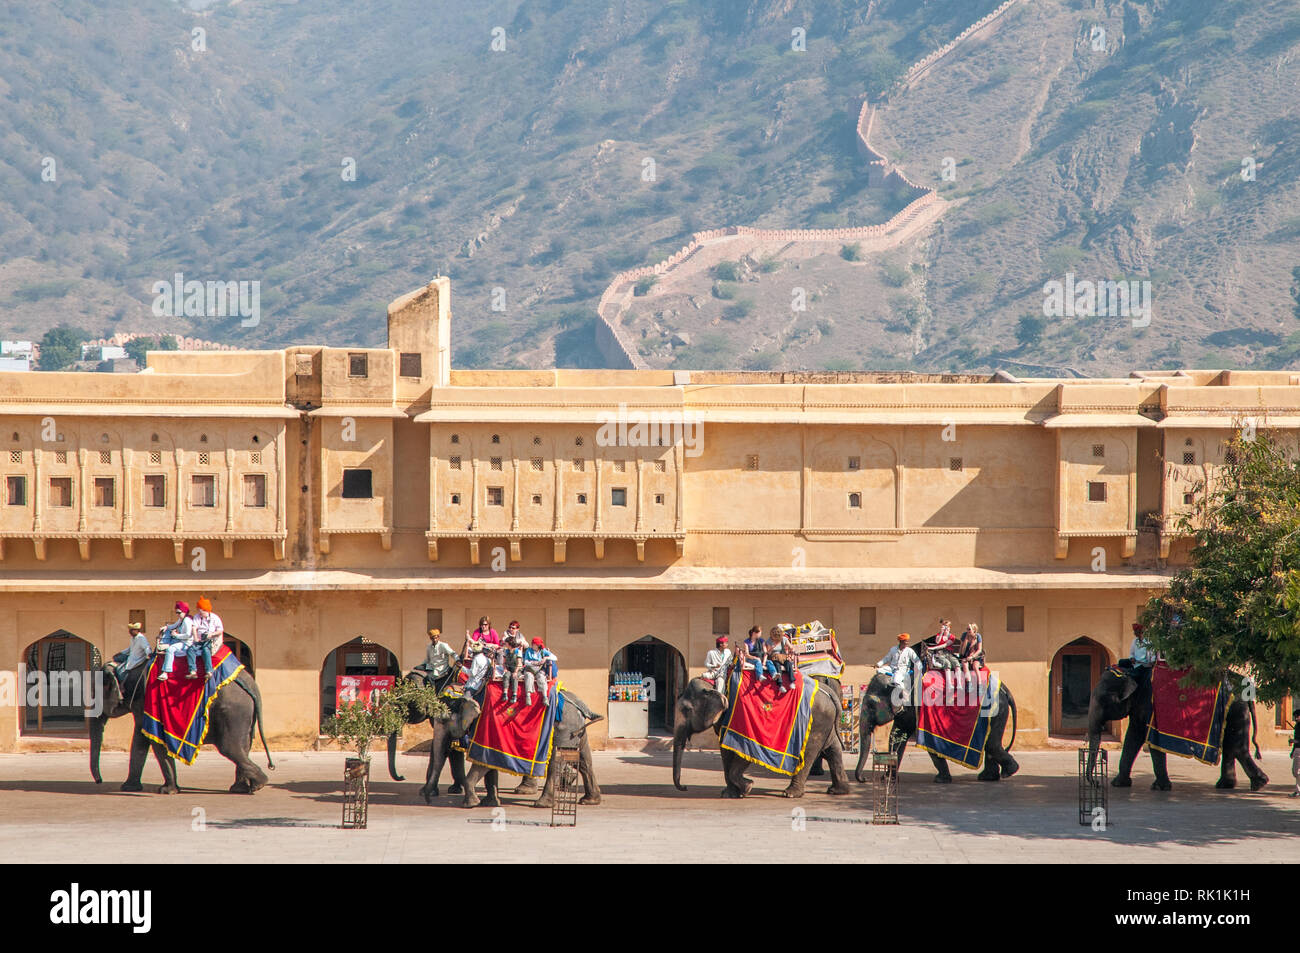 Bis zum Amber Fort auf Elephant. Amer Fort oder Amber Fort im Jahr 1592 abgeschlossen war die Residenz der Rajput Maharajas in Jaipur, Indien. Stockfoto